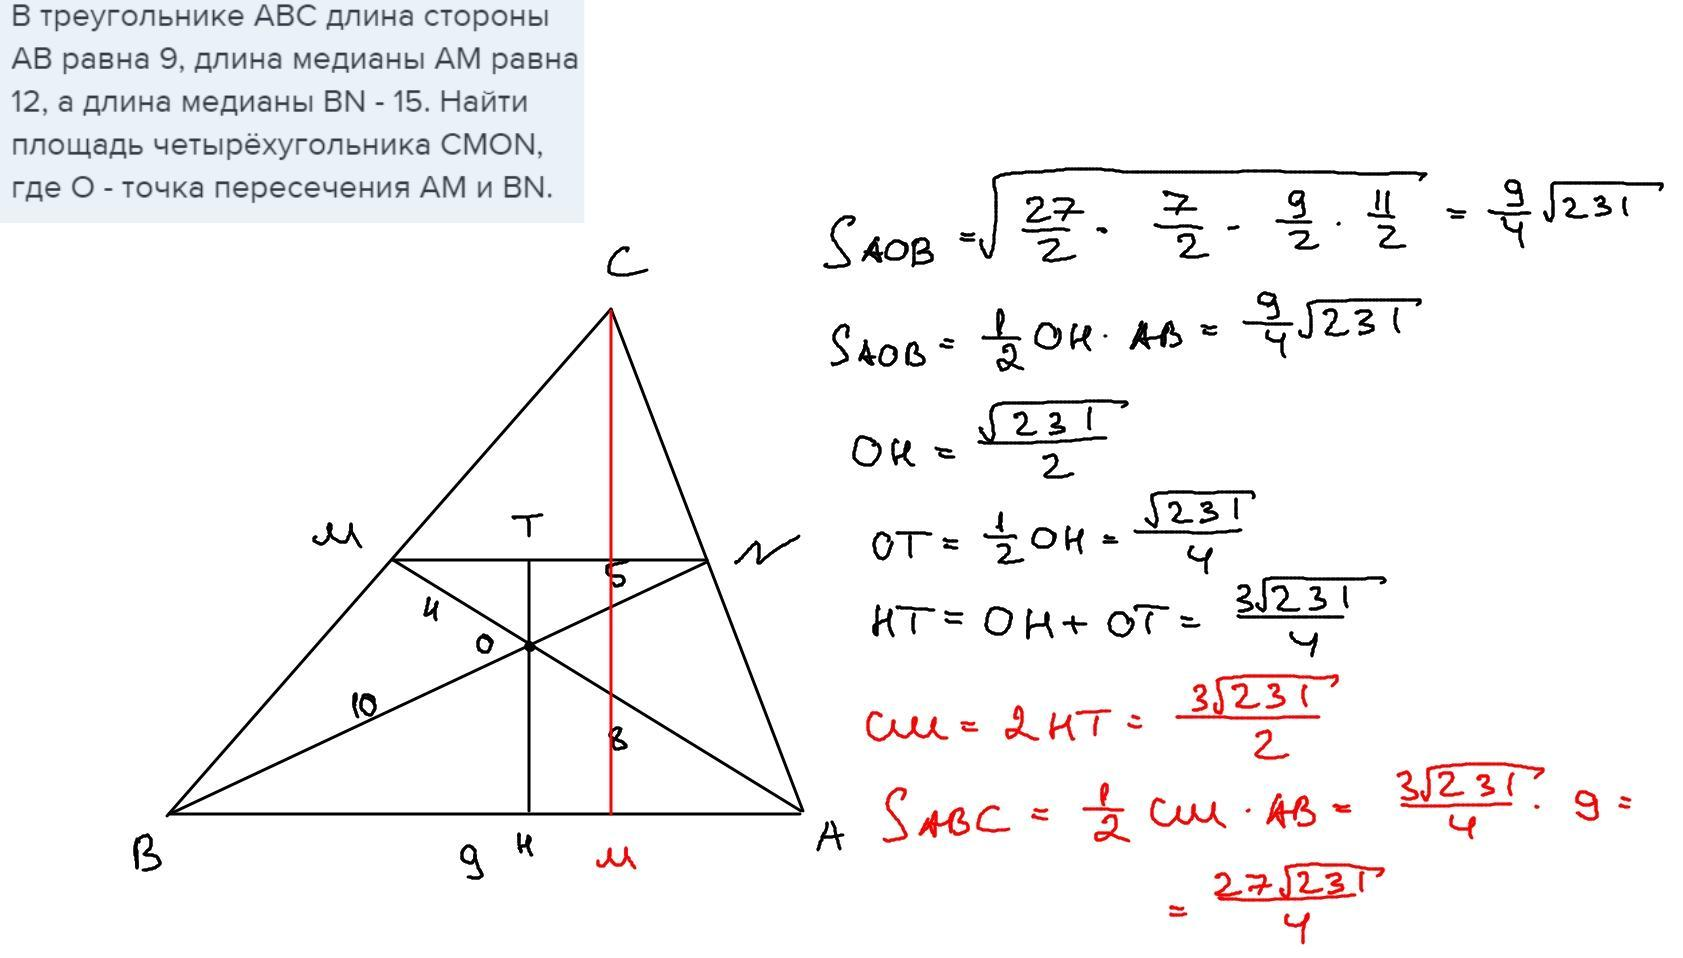 Даны три угла авс. Треугольник ABC. Длина Медианы треугольника. Треугольник с равными сторонами. Площадь треугольника АВС равна.